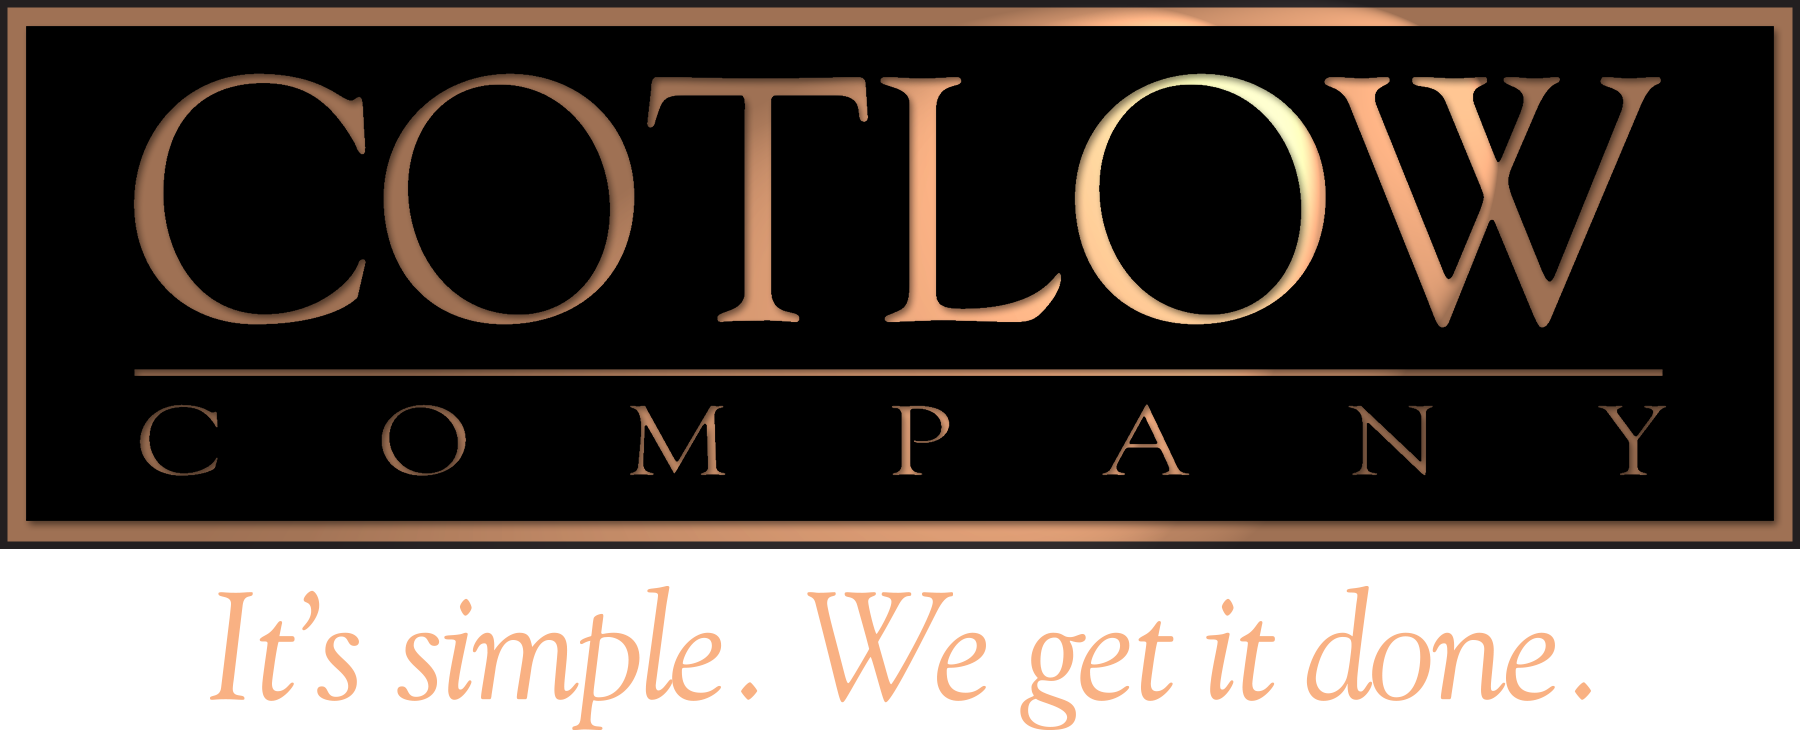 Cotlow Company